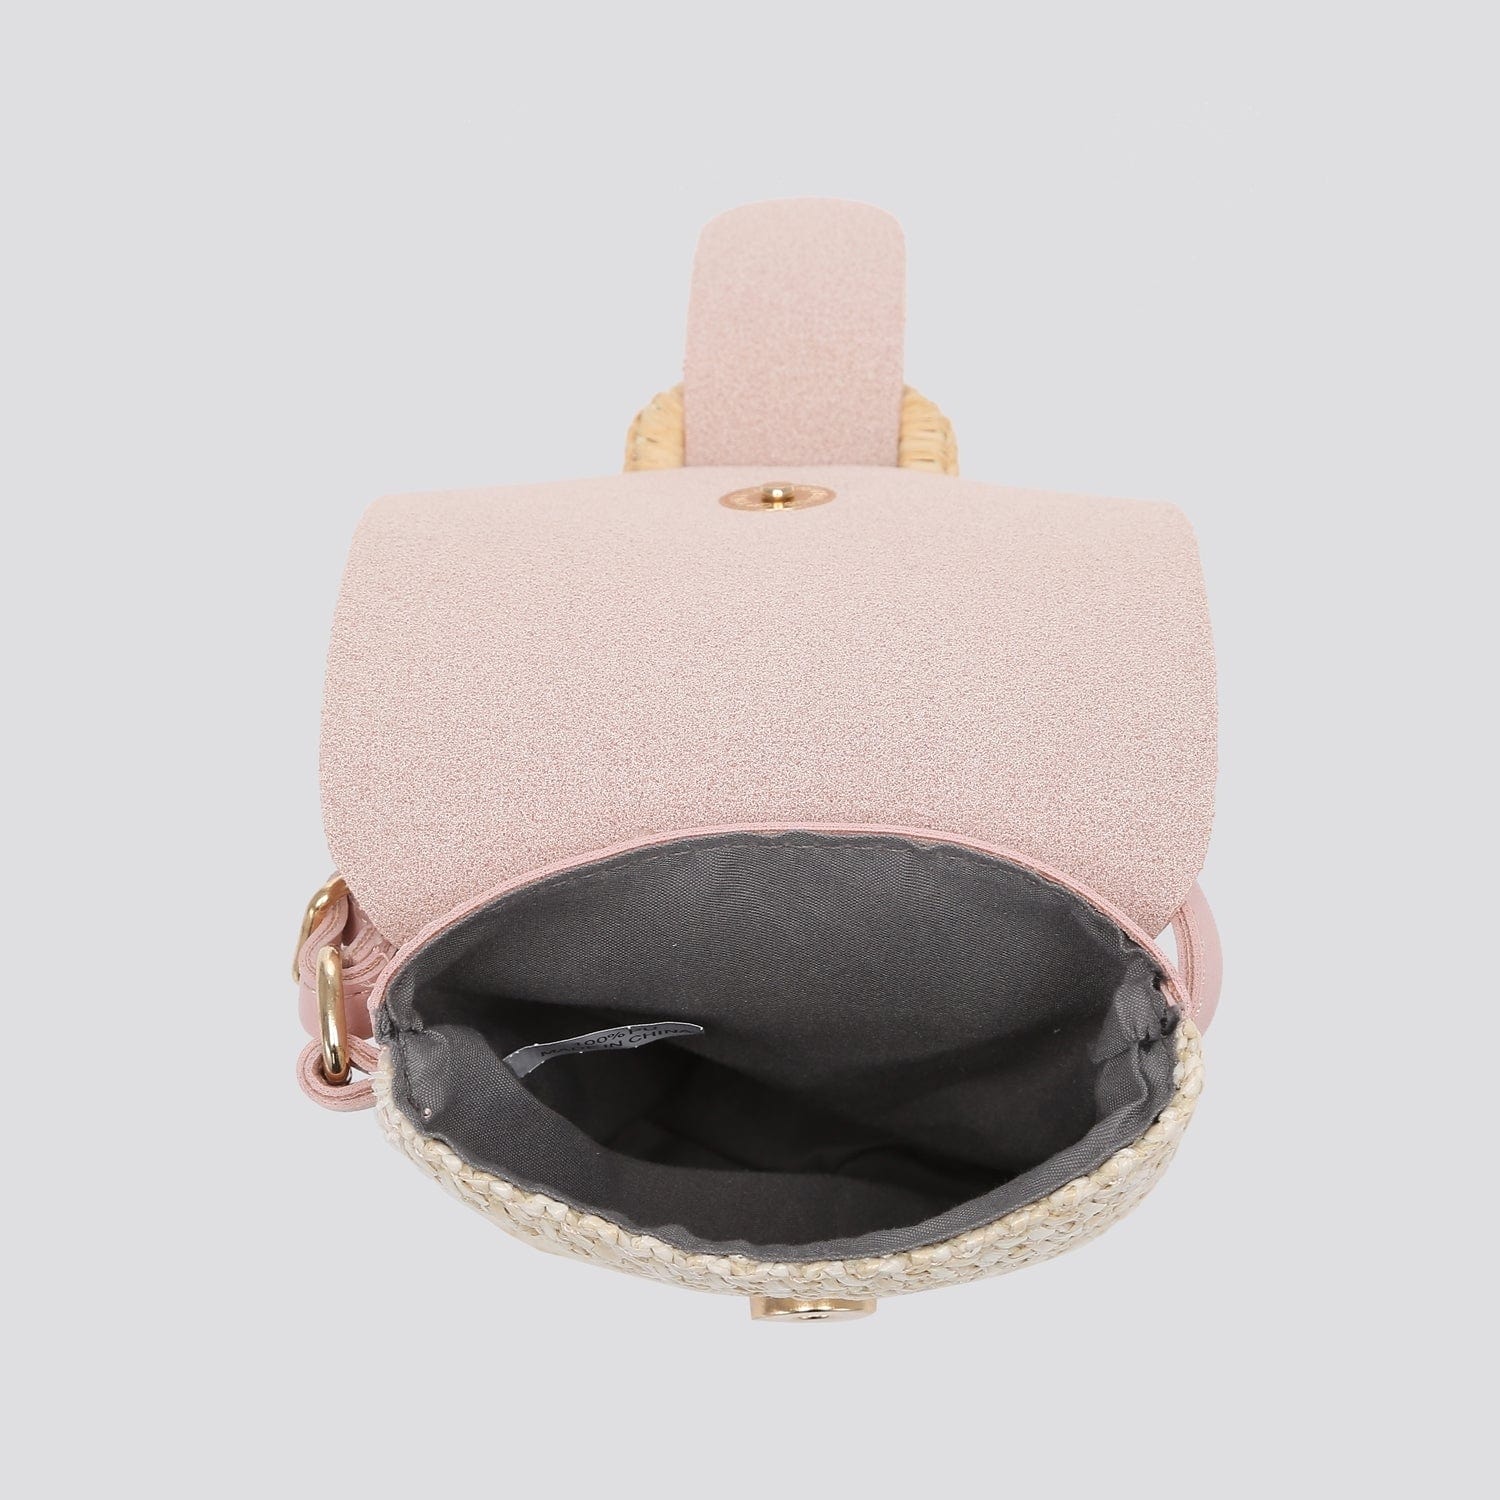 lusciousscarves Handbags Crossbody Phone Pouch , Woven Design Small Bag